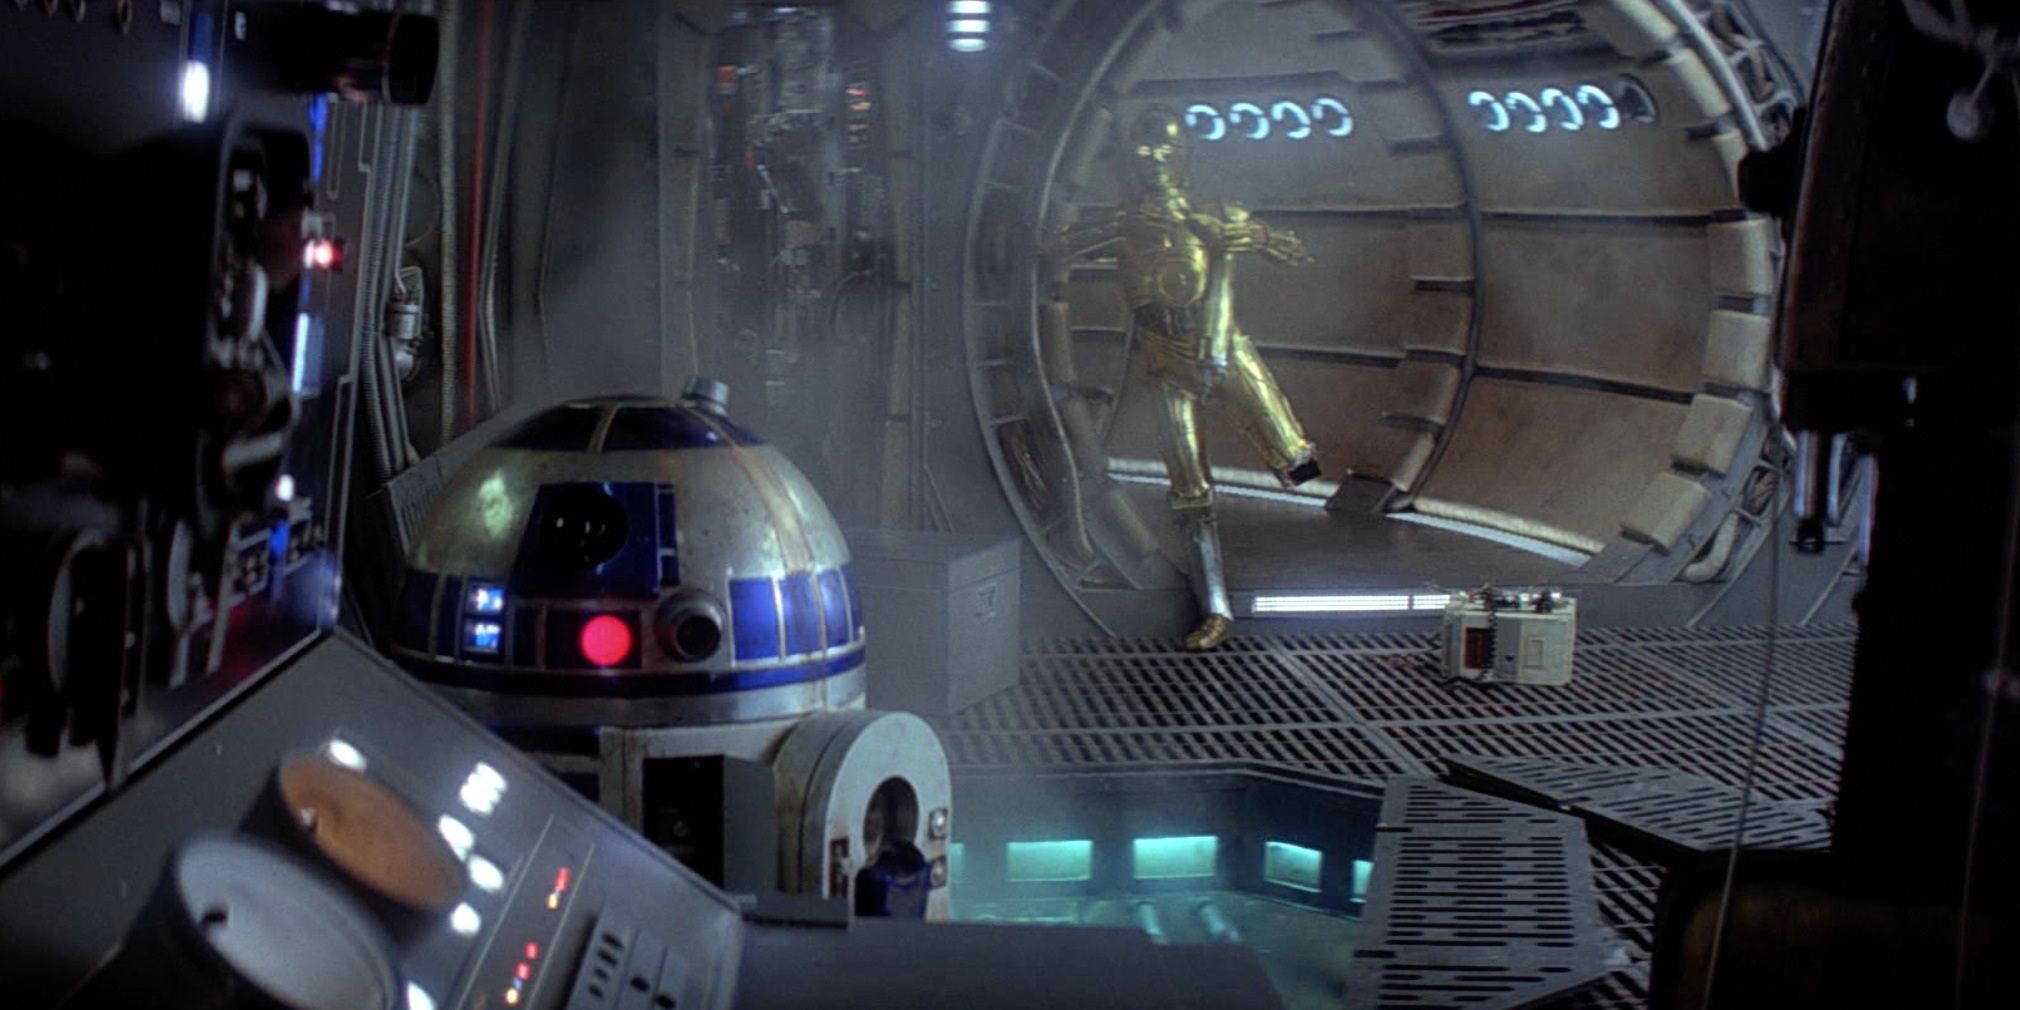 Star Wars R2D2 & C3POs 10 Best Scenes Ranked